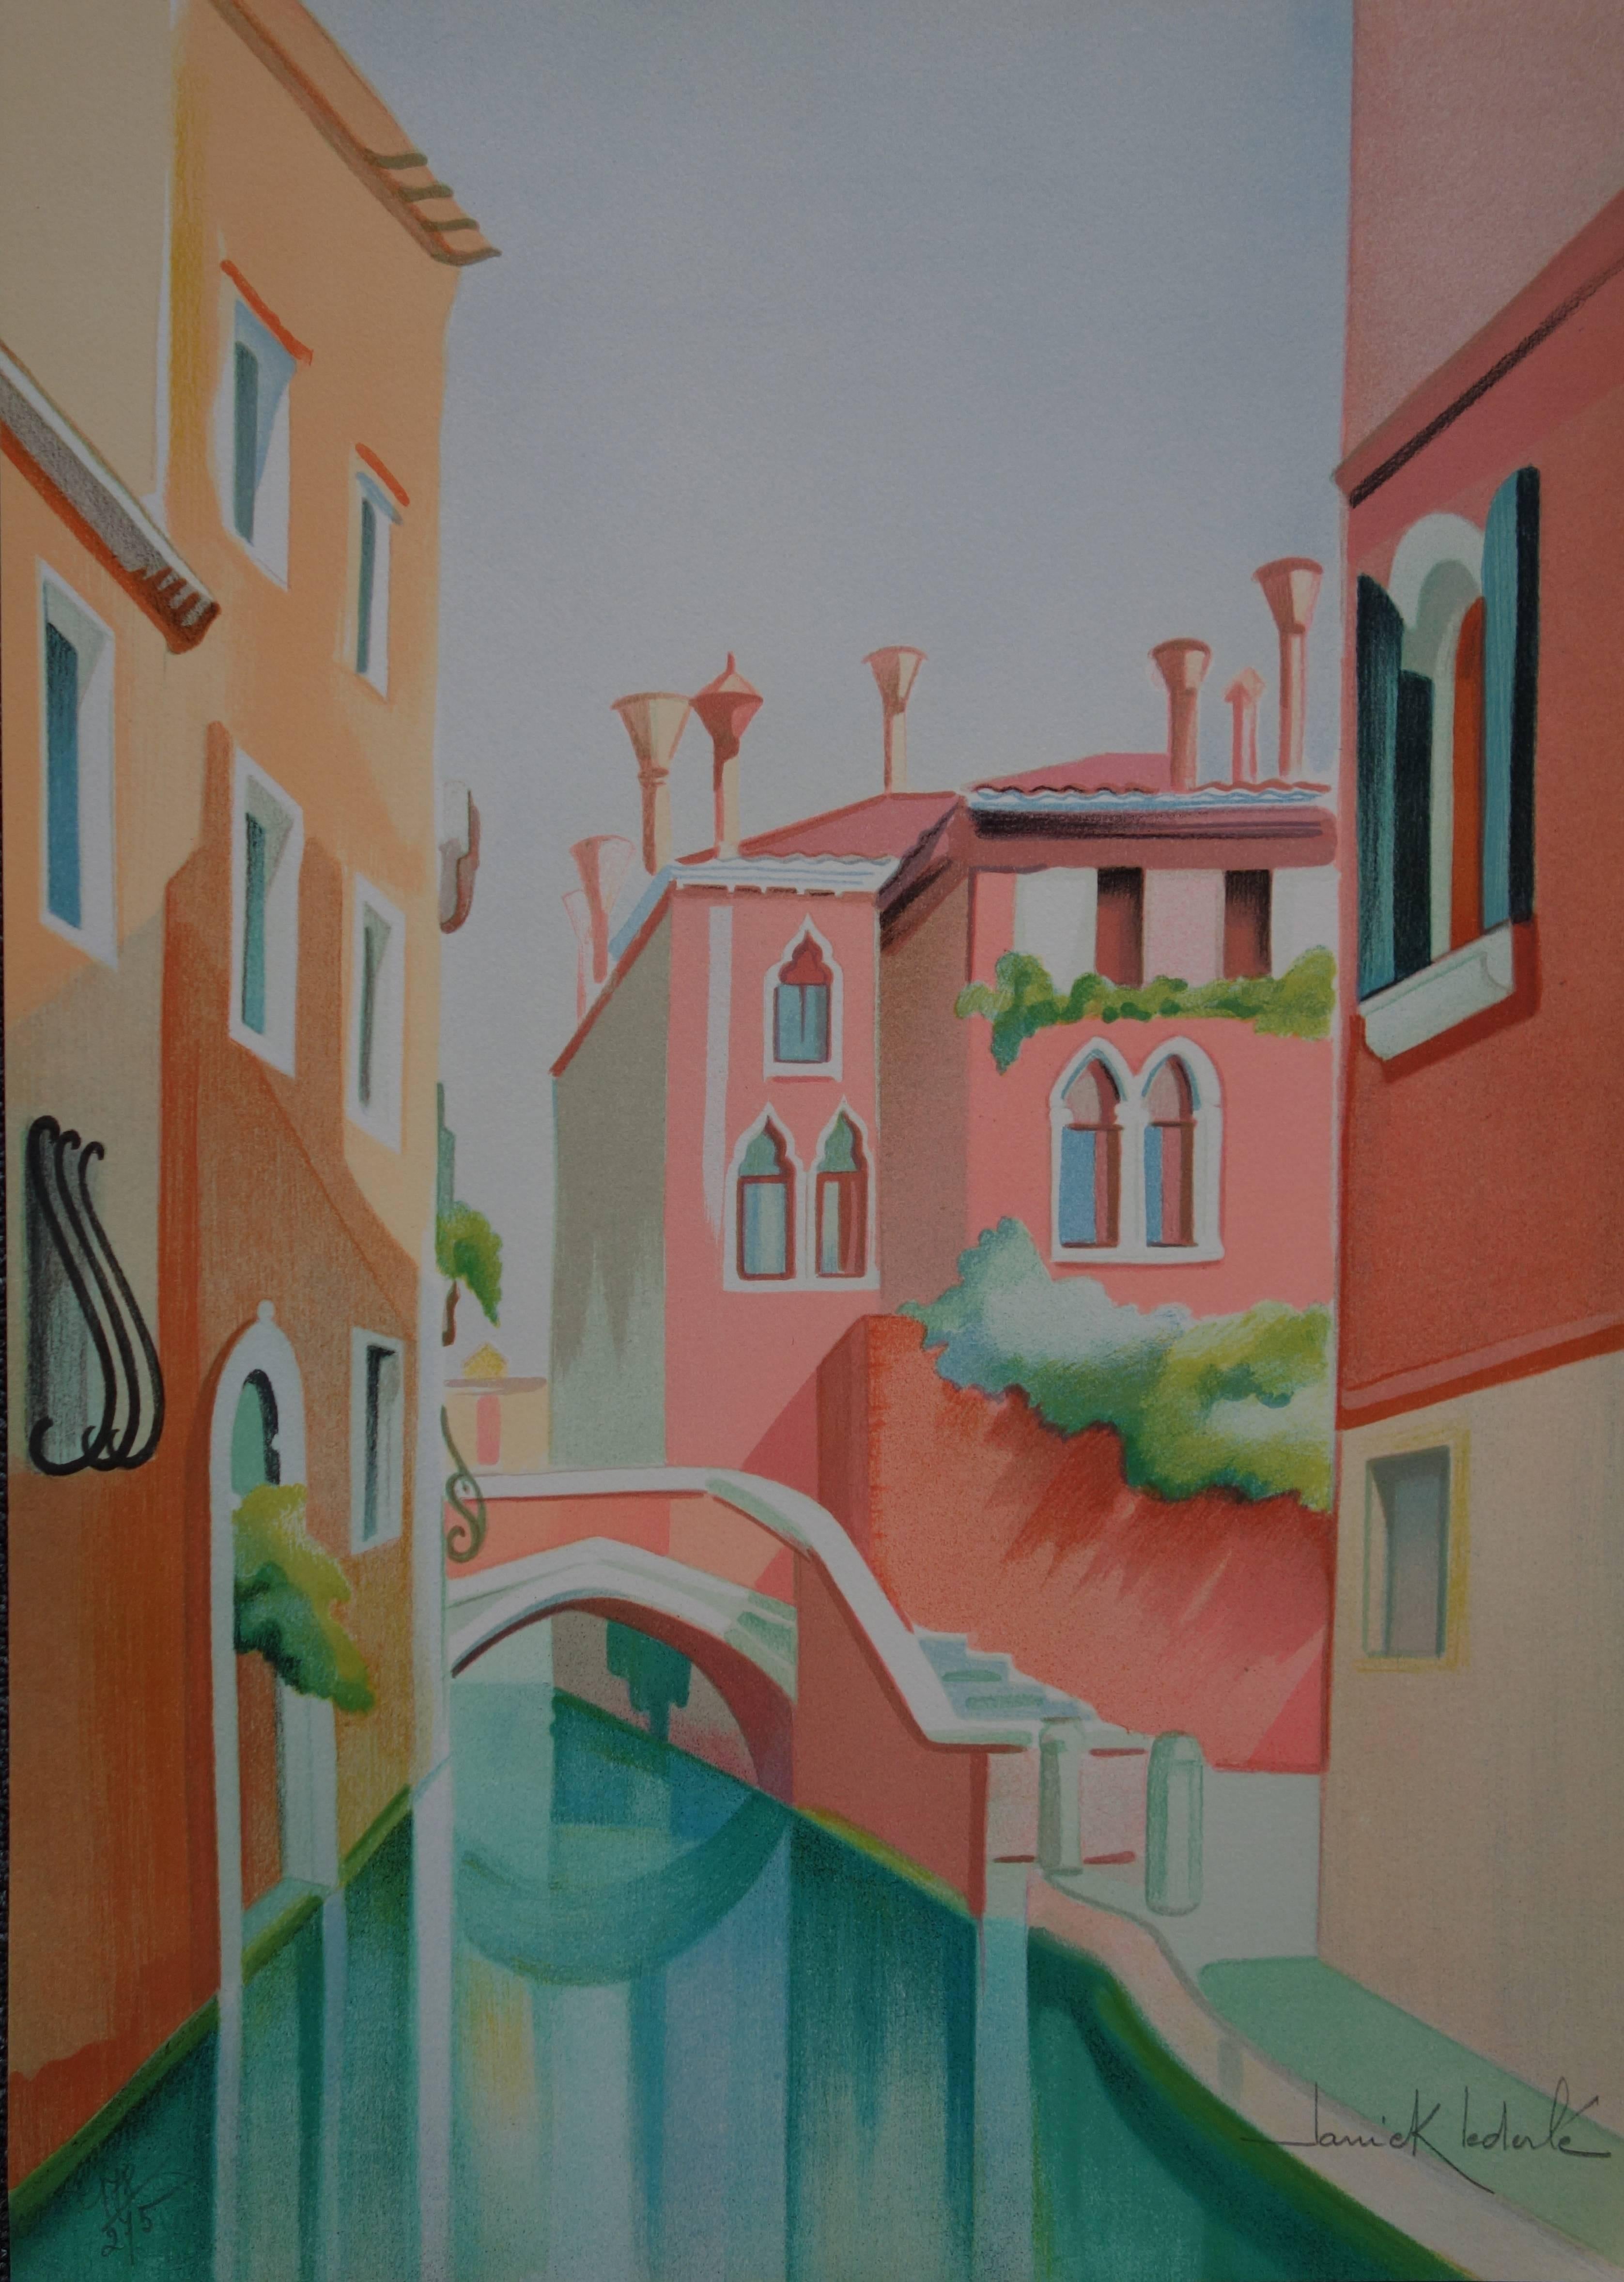 Janick Lederle Landscape Print - Quiet Canal in Venice - Original handsigned lithograph - 275ex